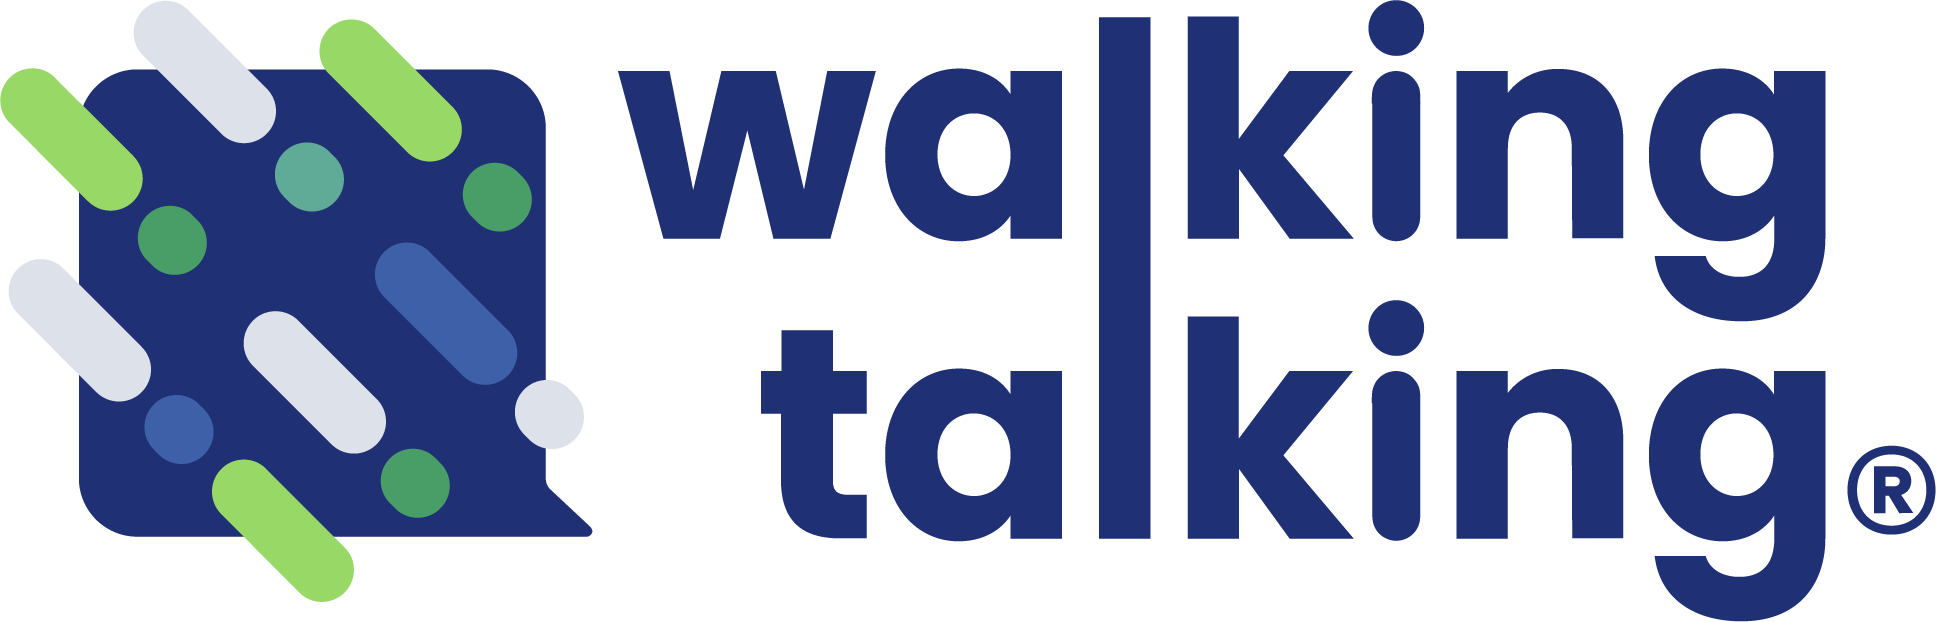 Walking Talking